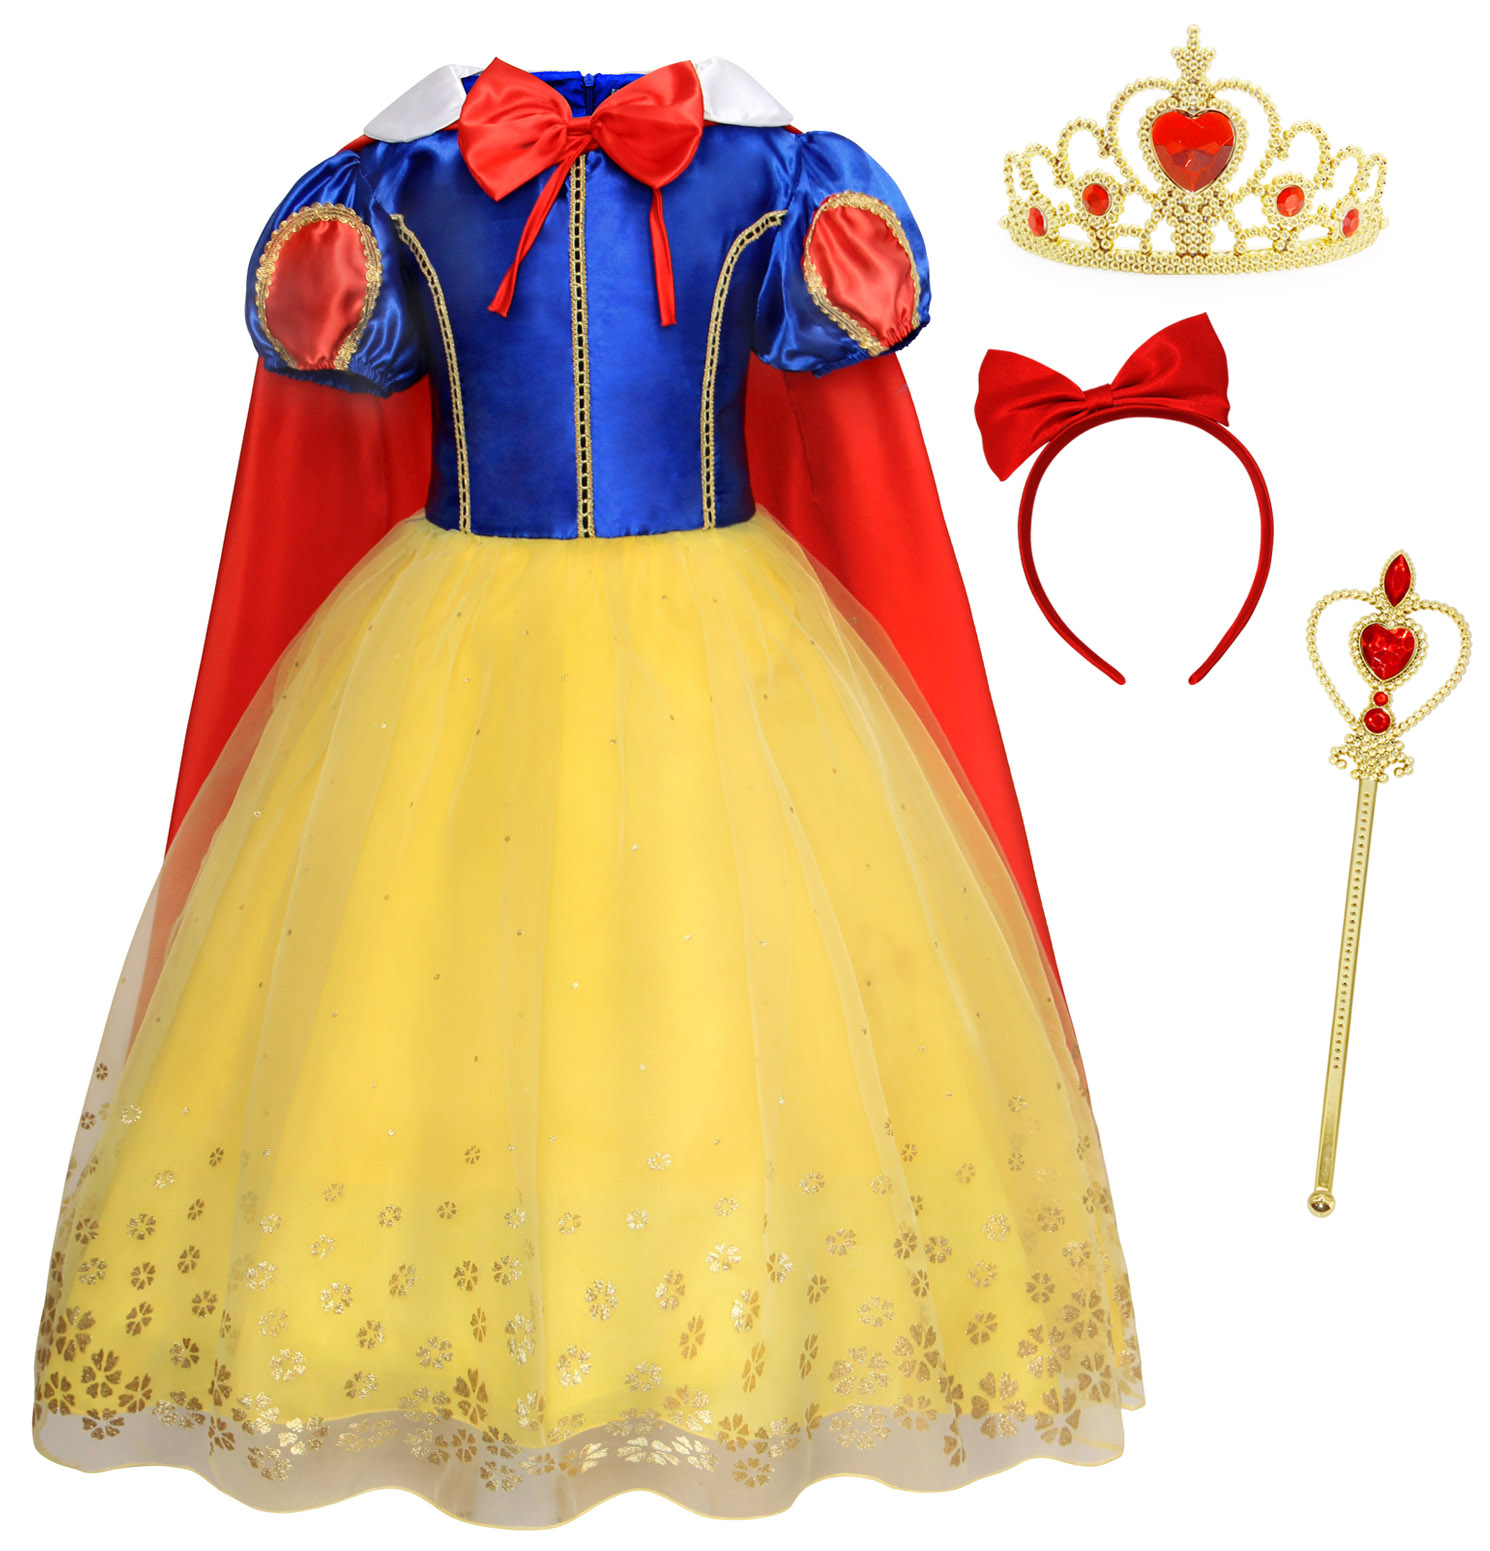 AmzBarley Fille Enfant Déguisement de Princesse Reine des Neiges Robe Costume Cosplay Fête Anniversaire Habiller Carnaval Halloween Soirée avec Cap